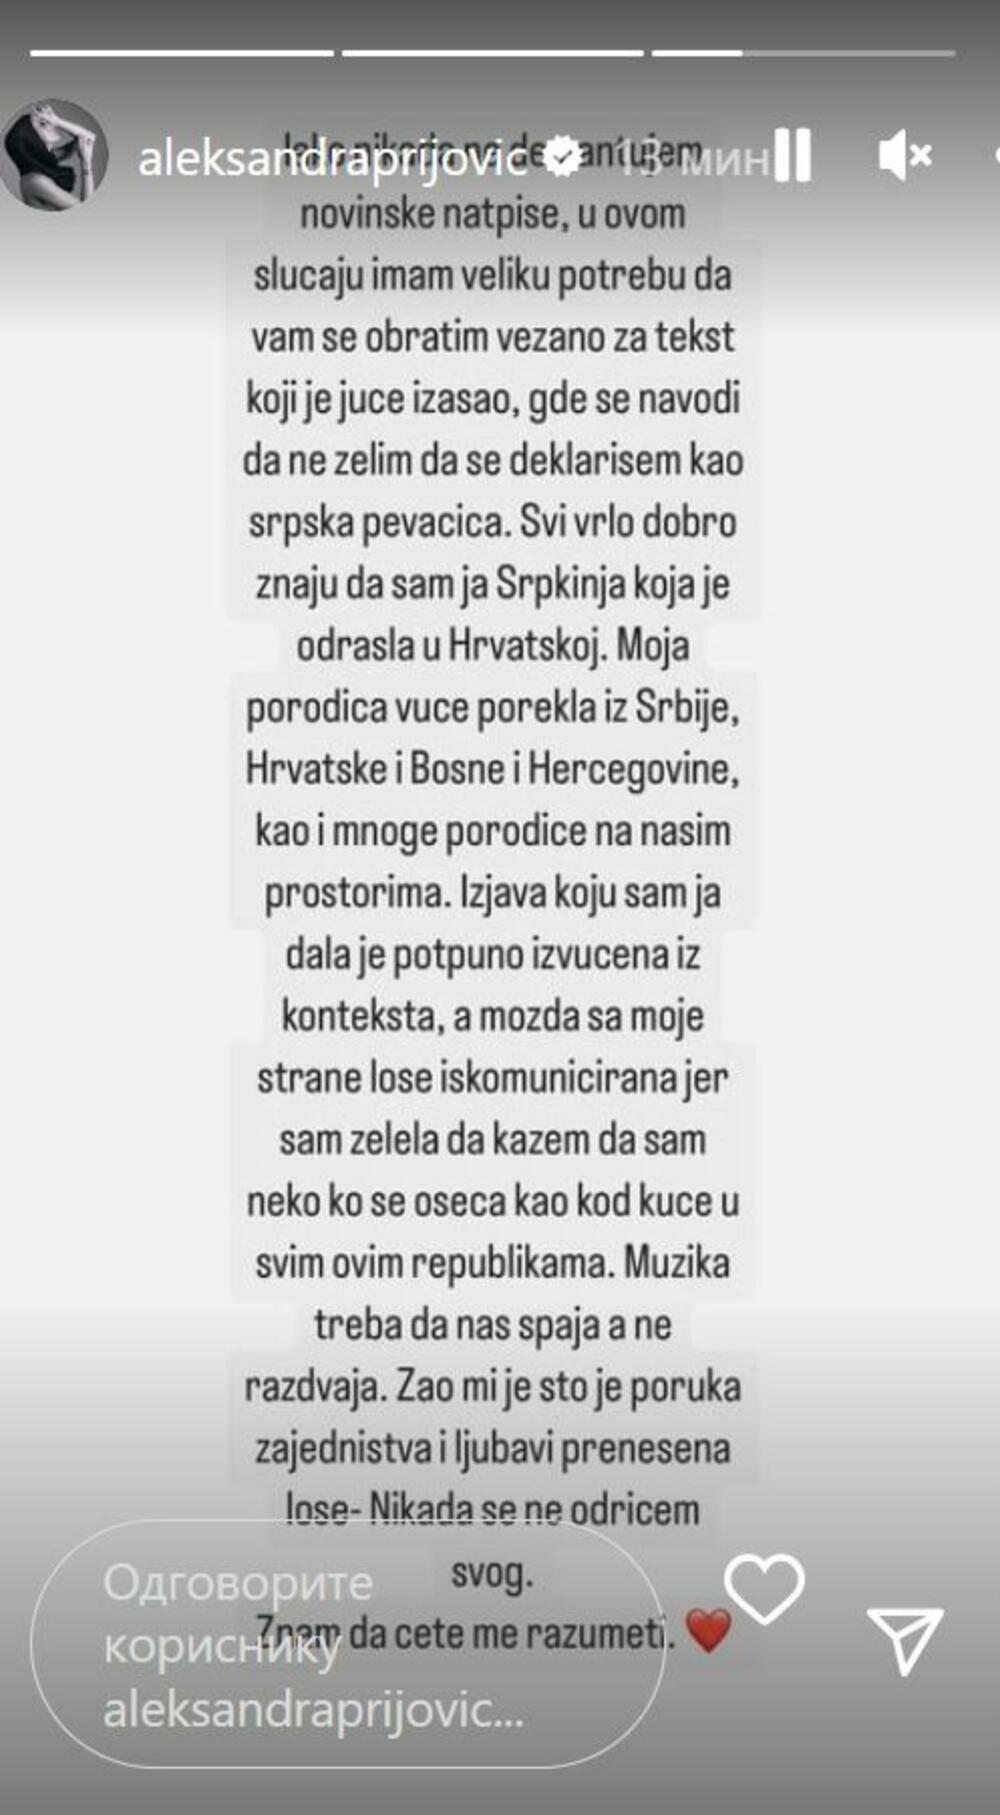 Aleksandru Prijović napali su na društvenim mrežama zbog izjave koju je dala za hrvatske medije da ona nije samo 'srpska pevačica', već da pripada svima.